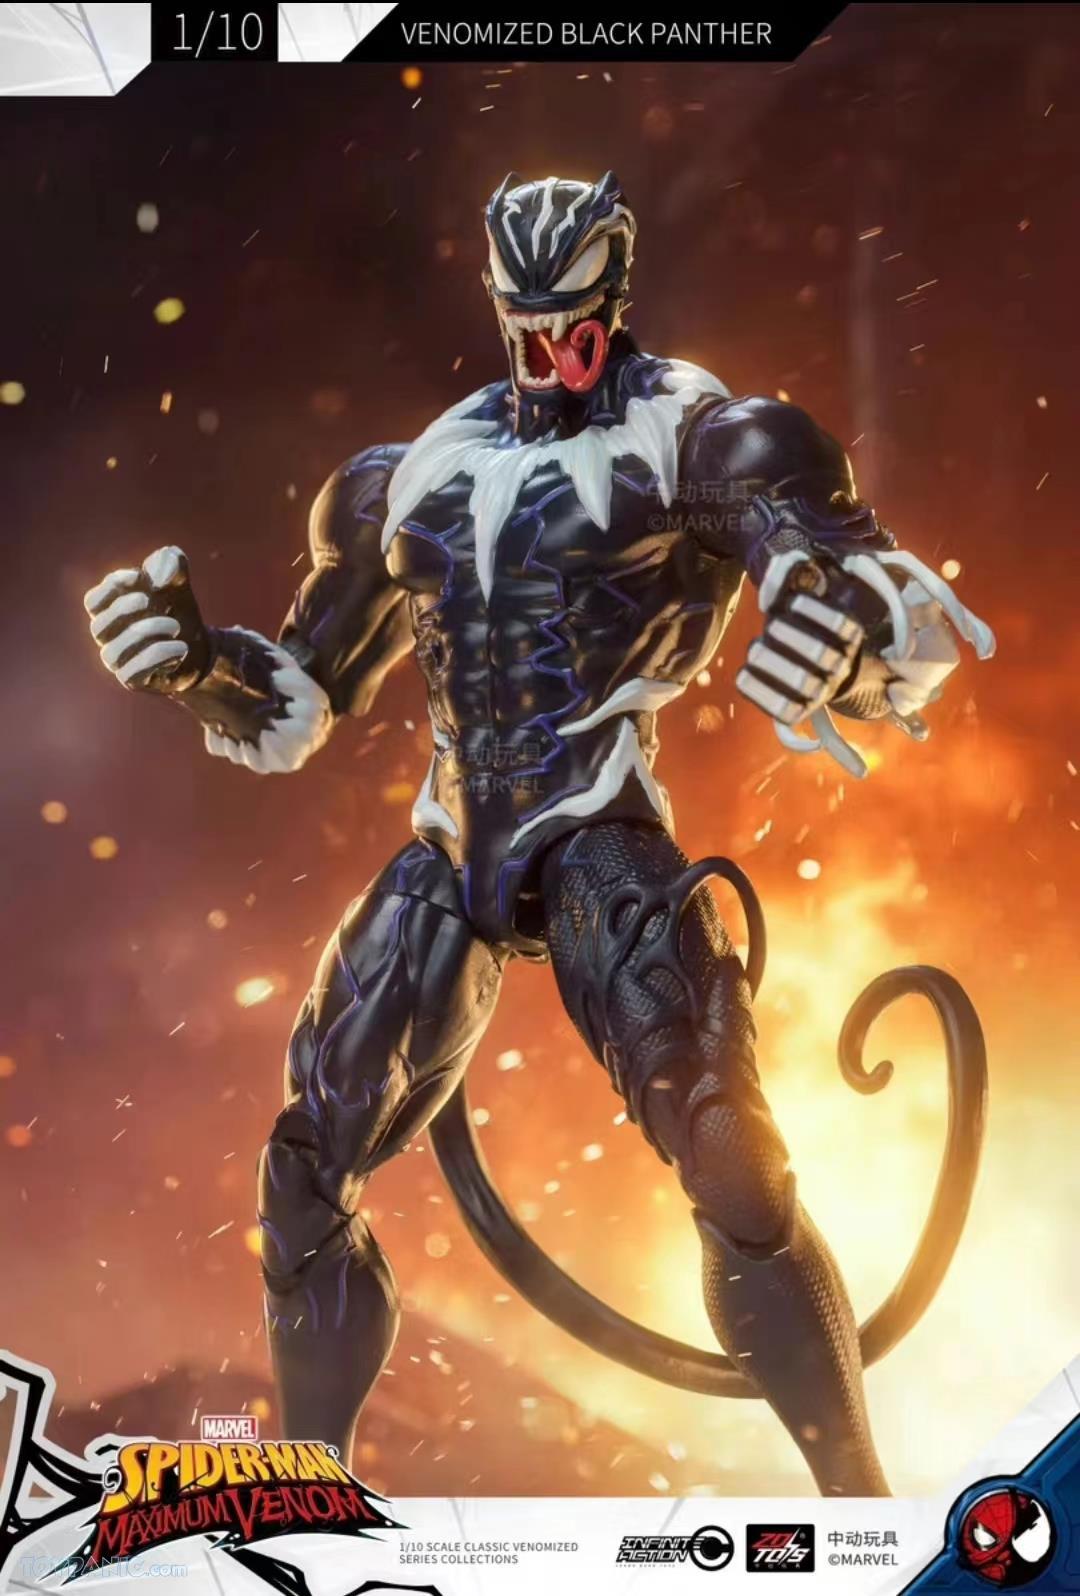 ZD Toys Venom Figurine 1:10